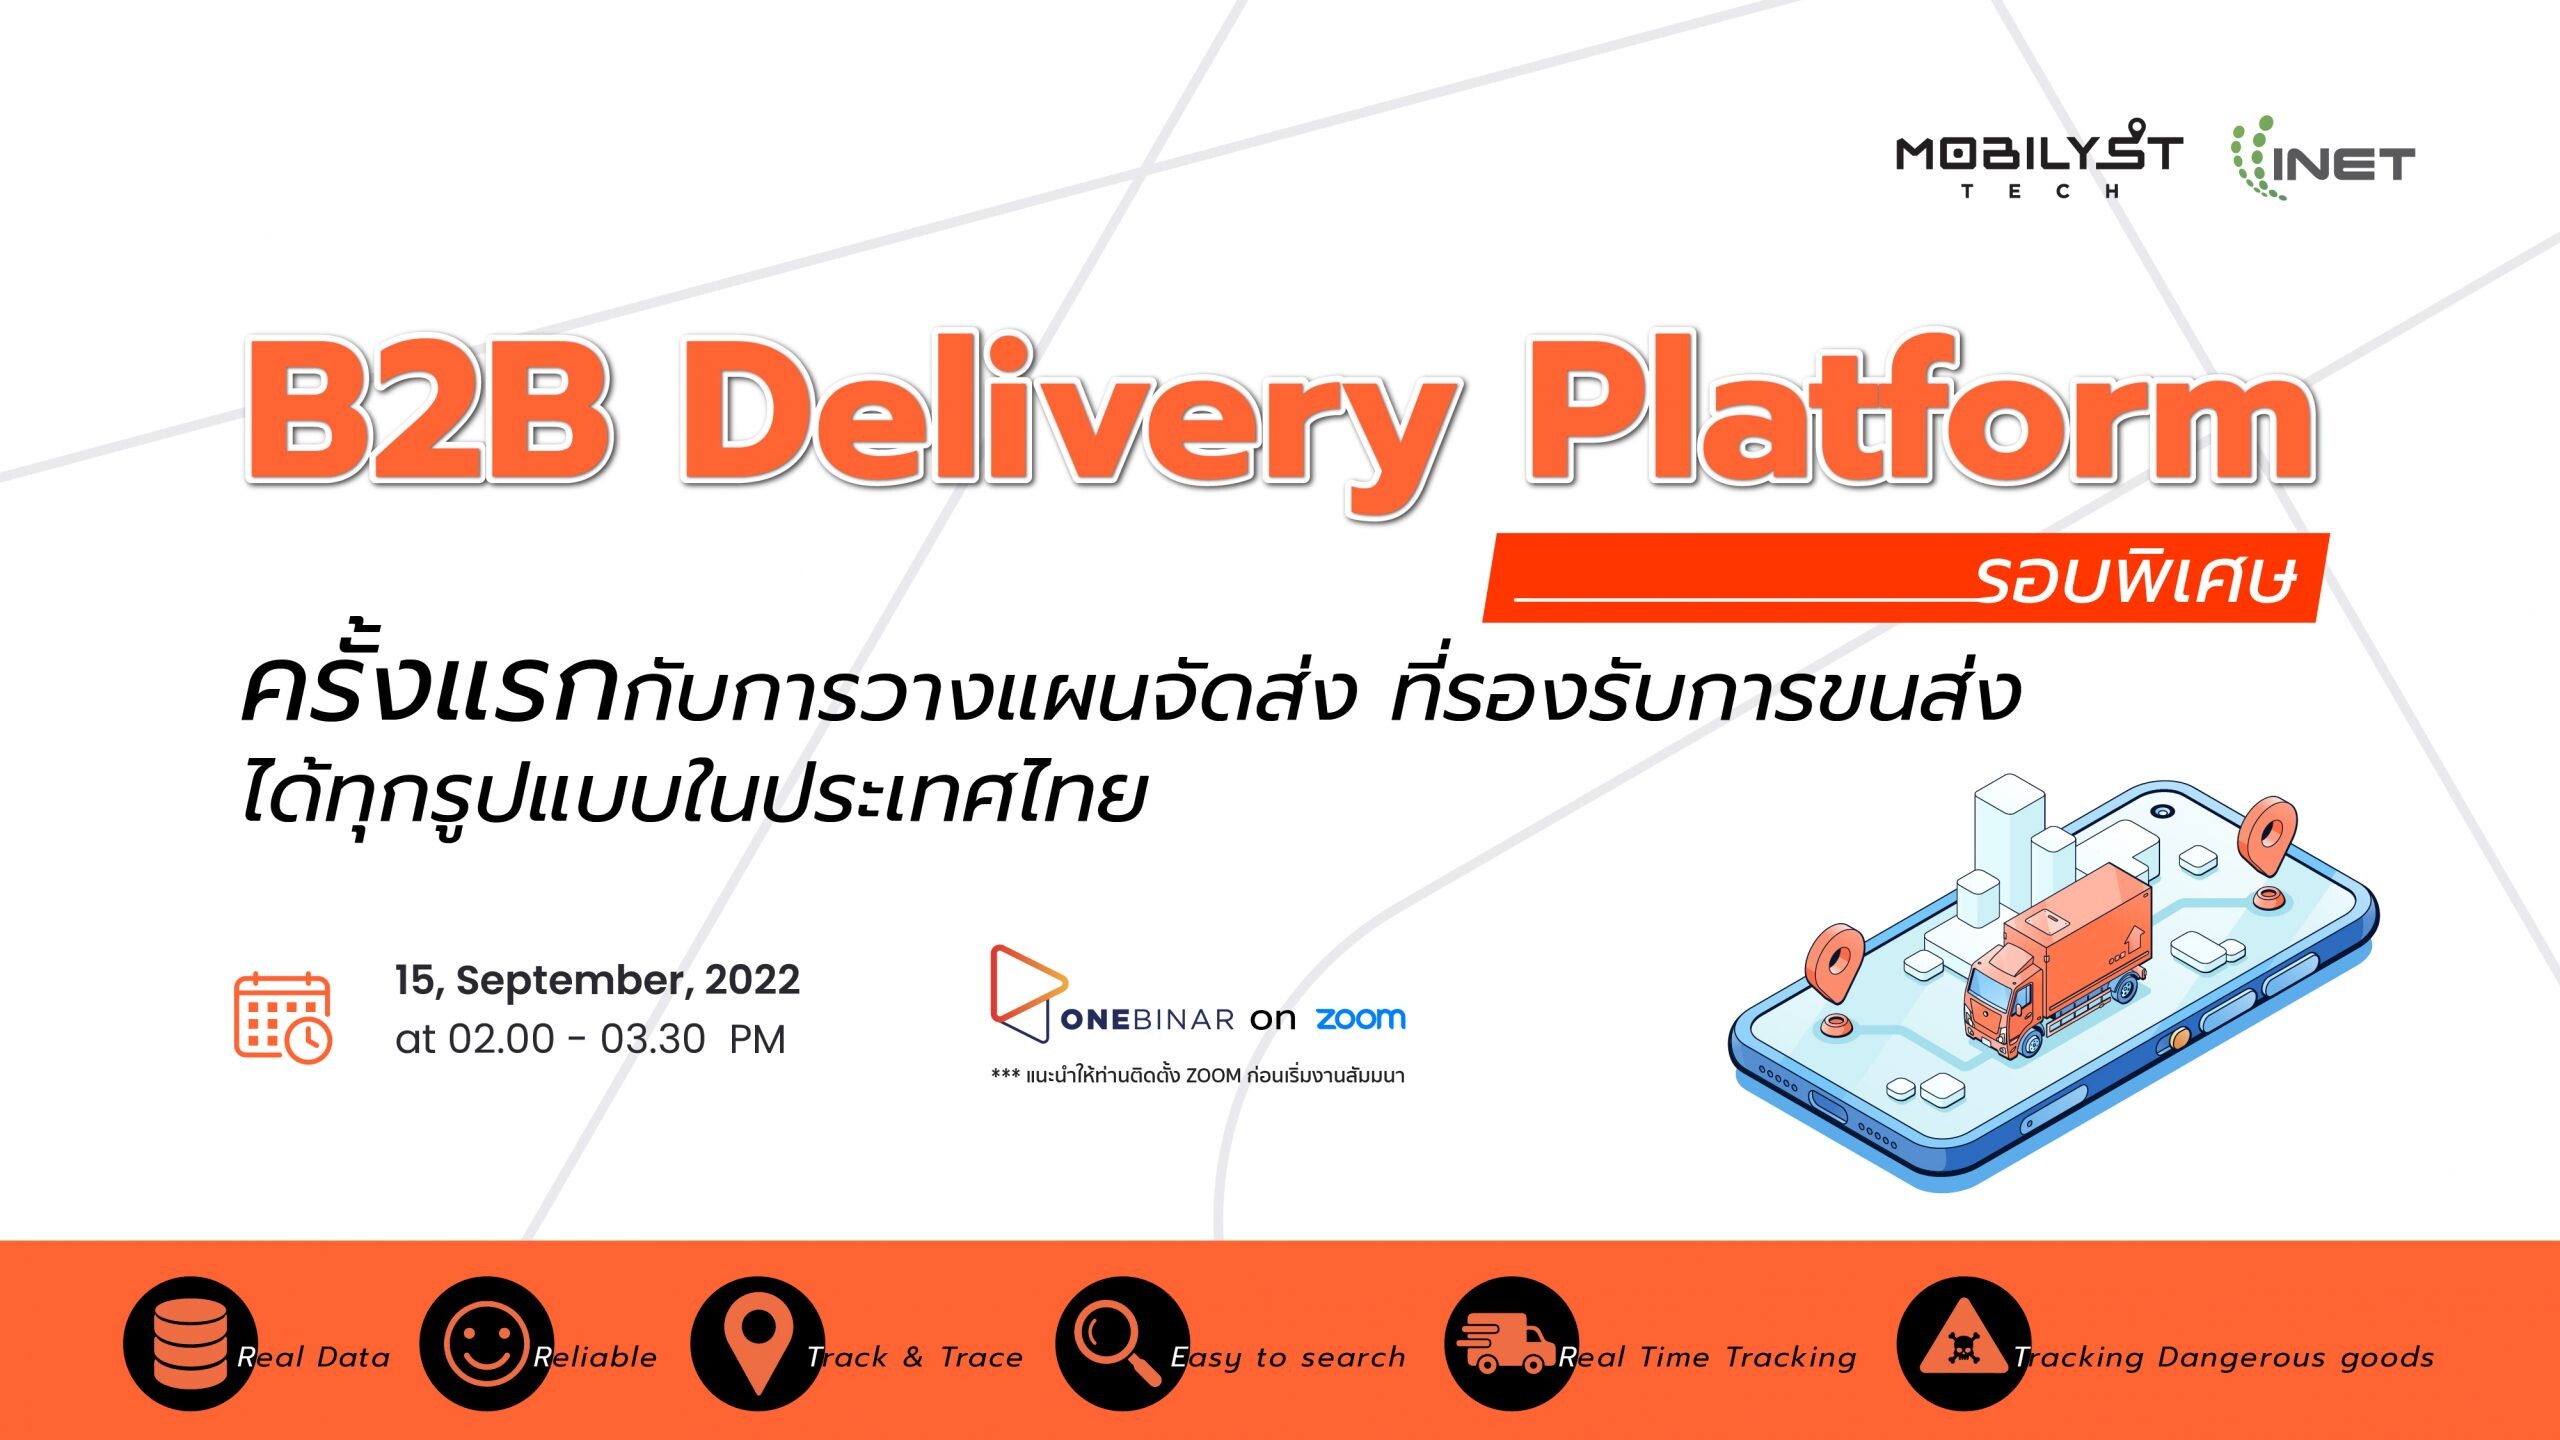 กลับมาอีกครั้ง ตามคำเรียกร้อง งานสัมมนาออนไลน์ ลงทะเบียนฟรี หัวข้อ " B2B Delivery Platform " รอบพิเศษ!!